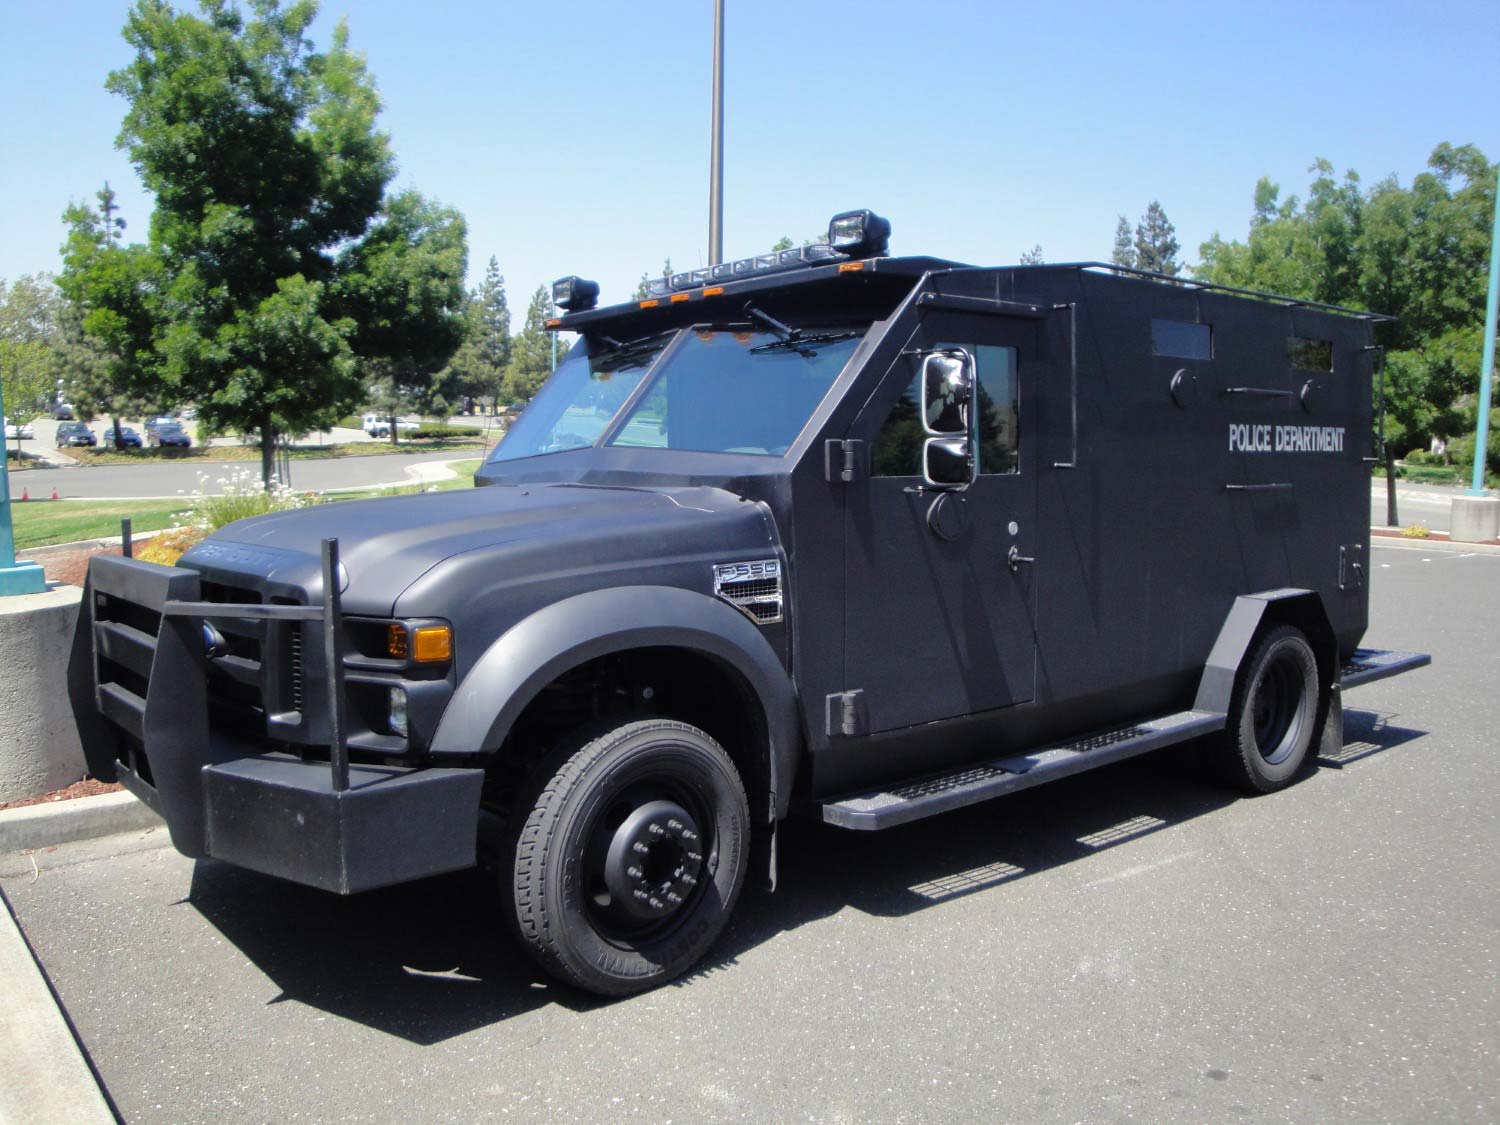 fbi swat truck